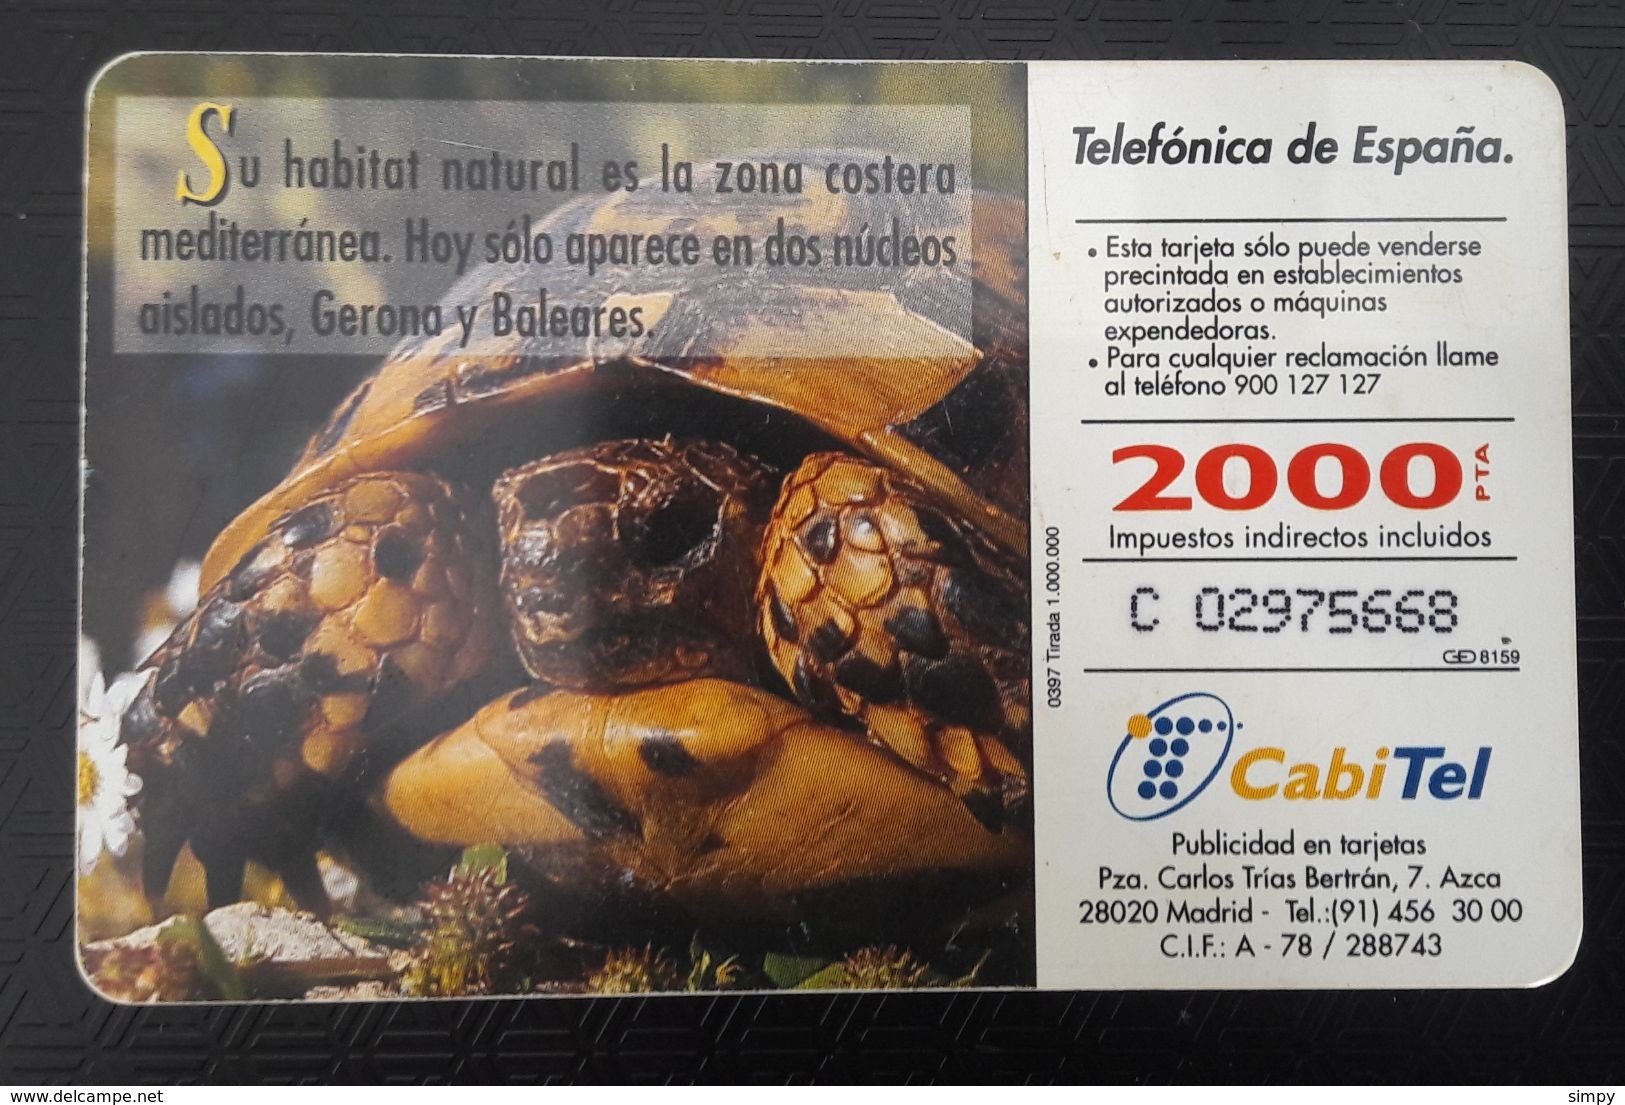 SPAIN Turtles  Chip Phonecard - Turtles